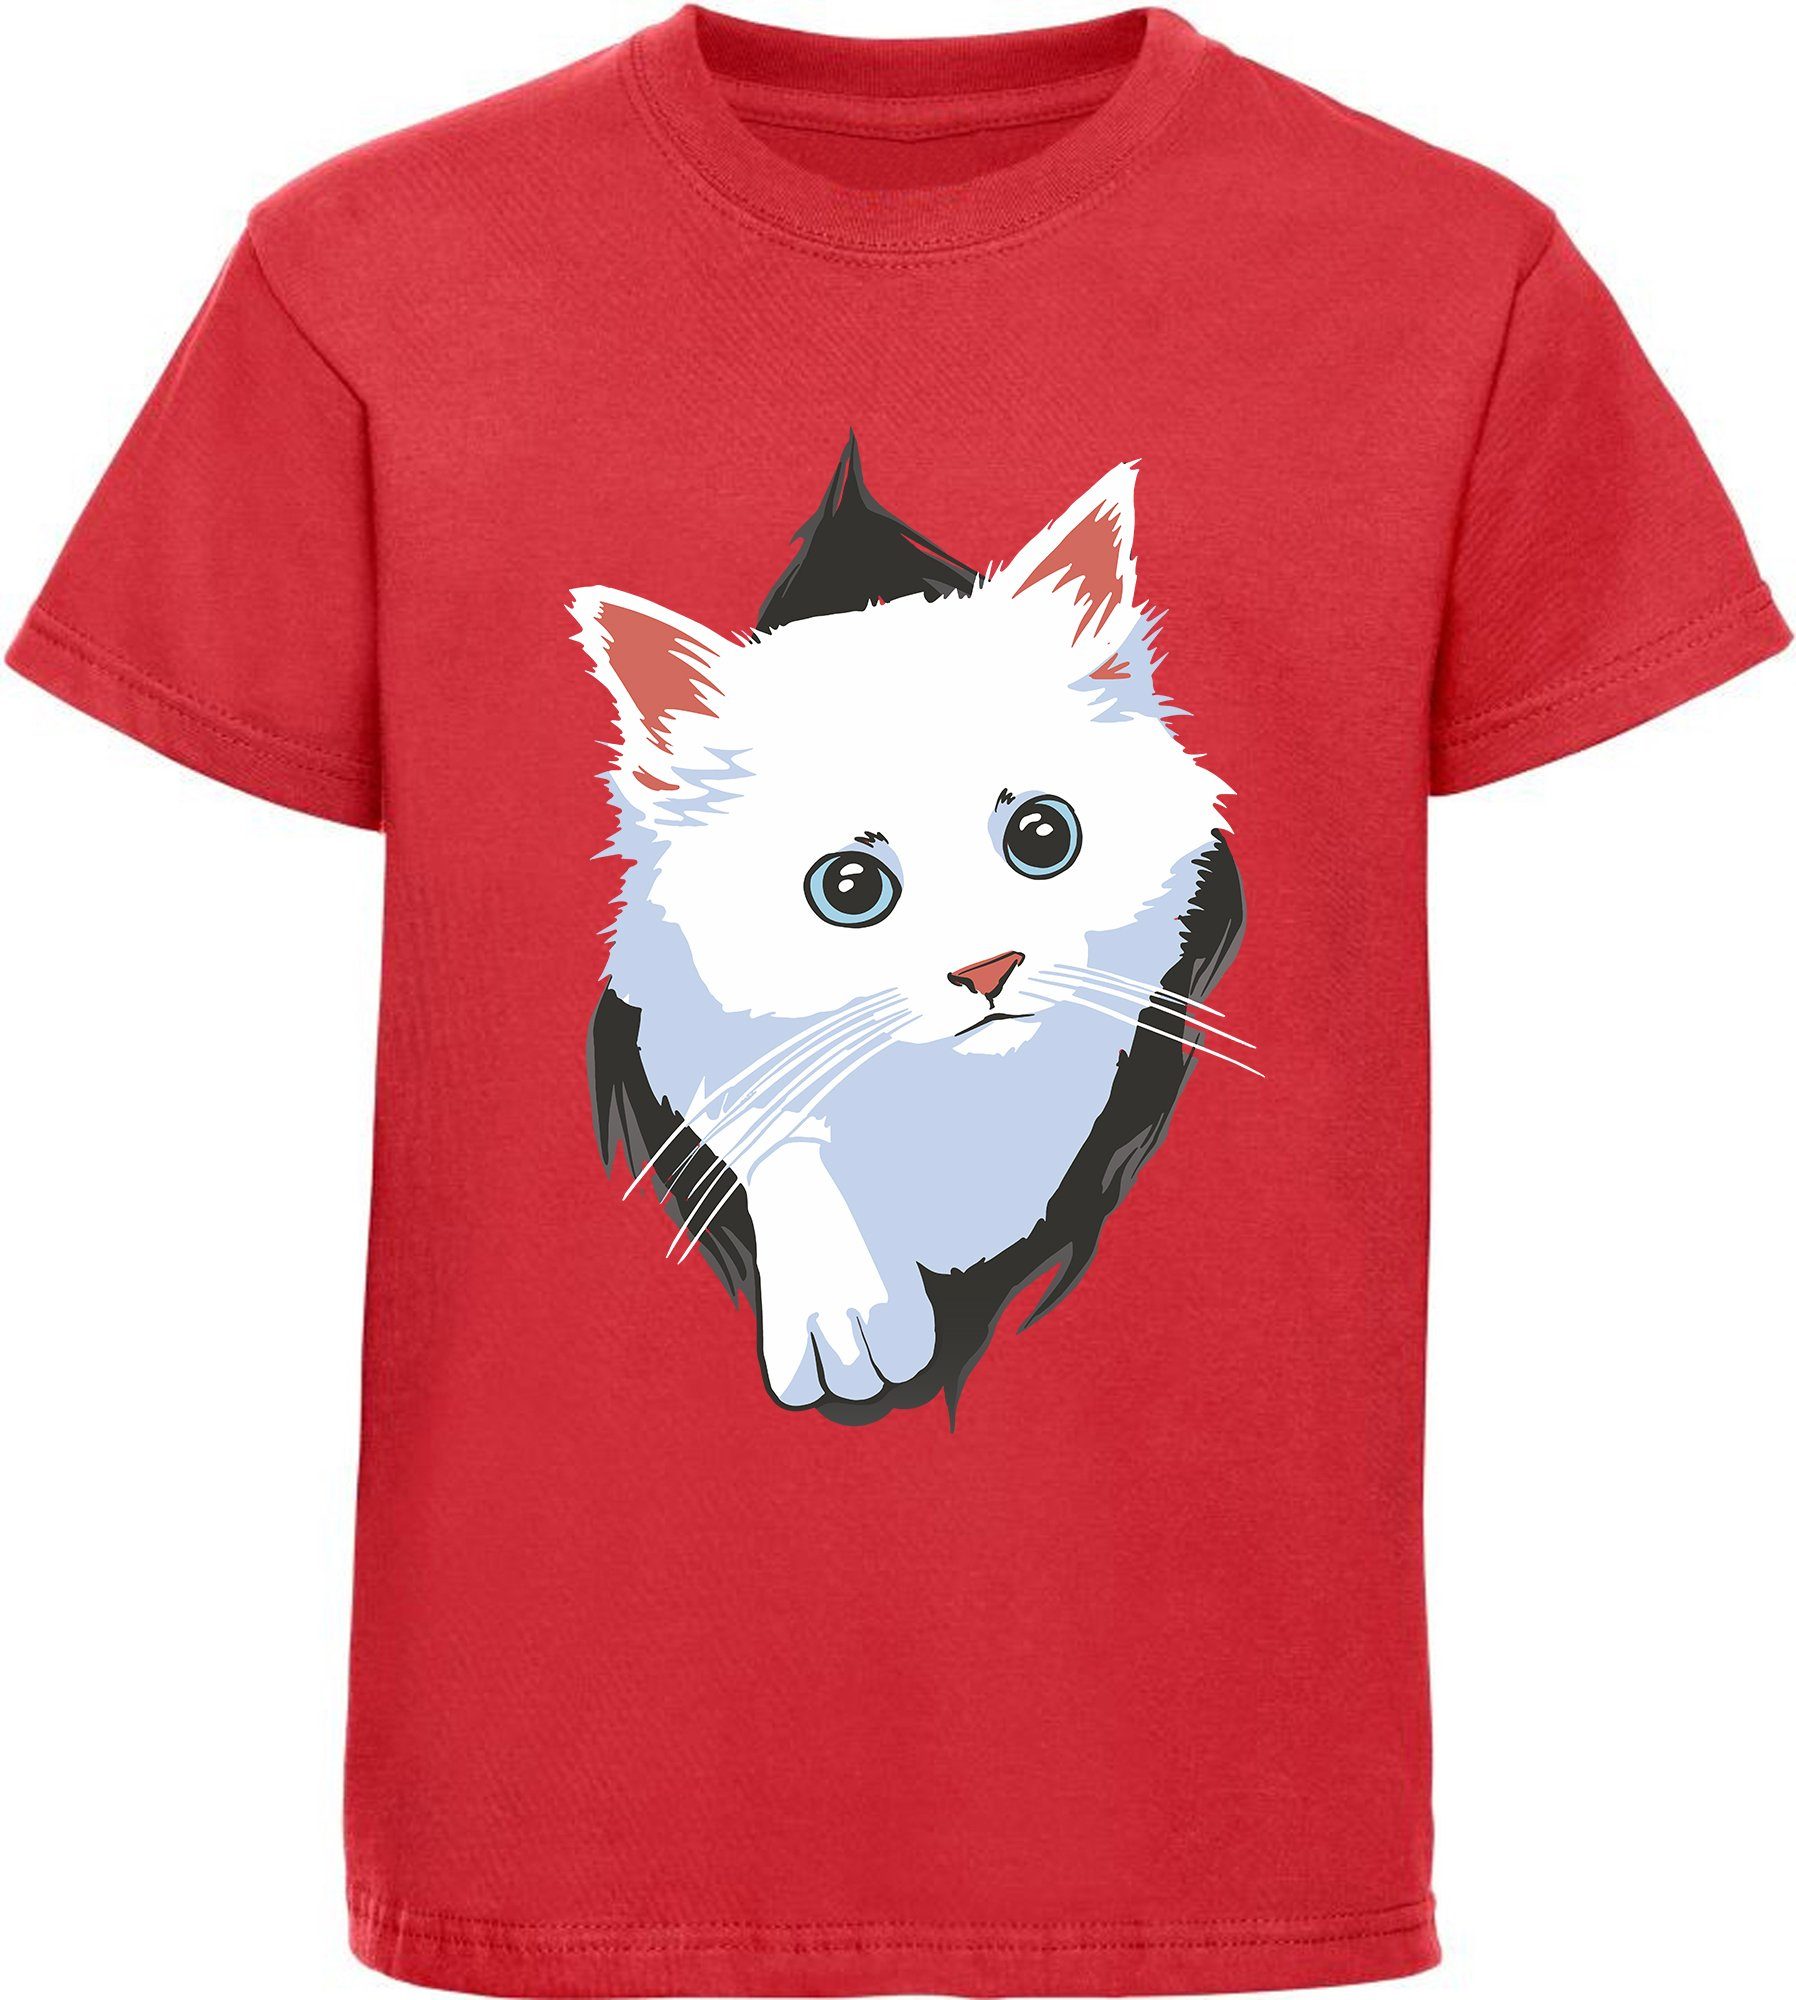 weiß, rot, Katze Mädchen aus Katzen weiße MyDesign24 Aufdruck, Baumwollshirt - mit dem T-Shirt bedrucktes schwarz, i113 Shirt rosa, Print-Shirt